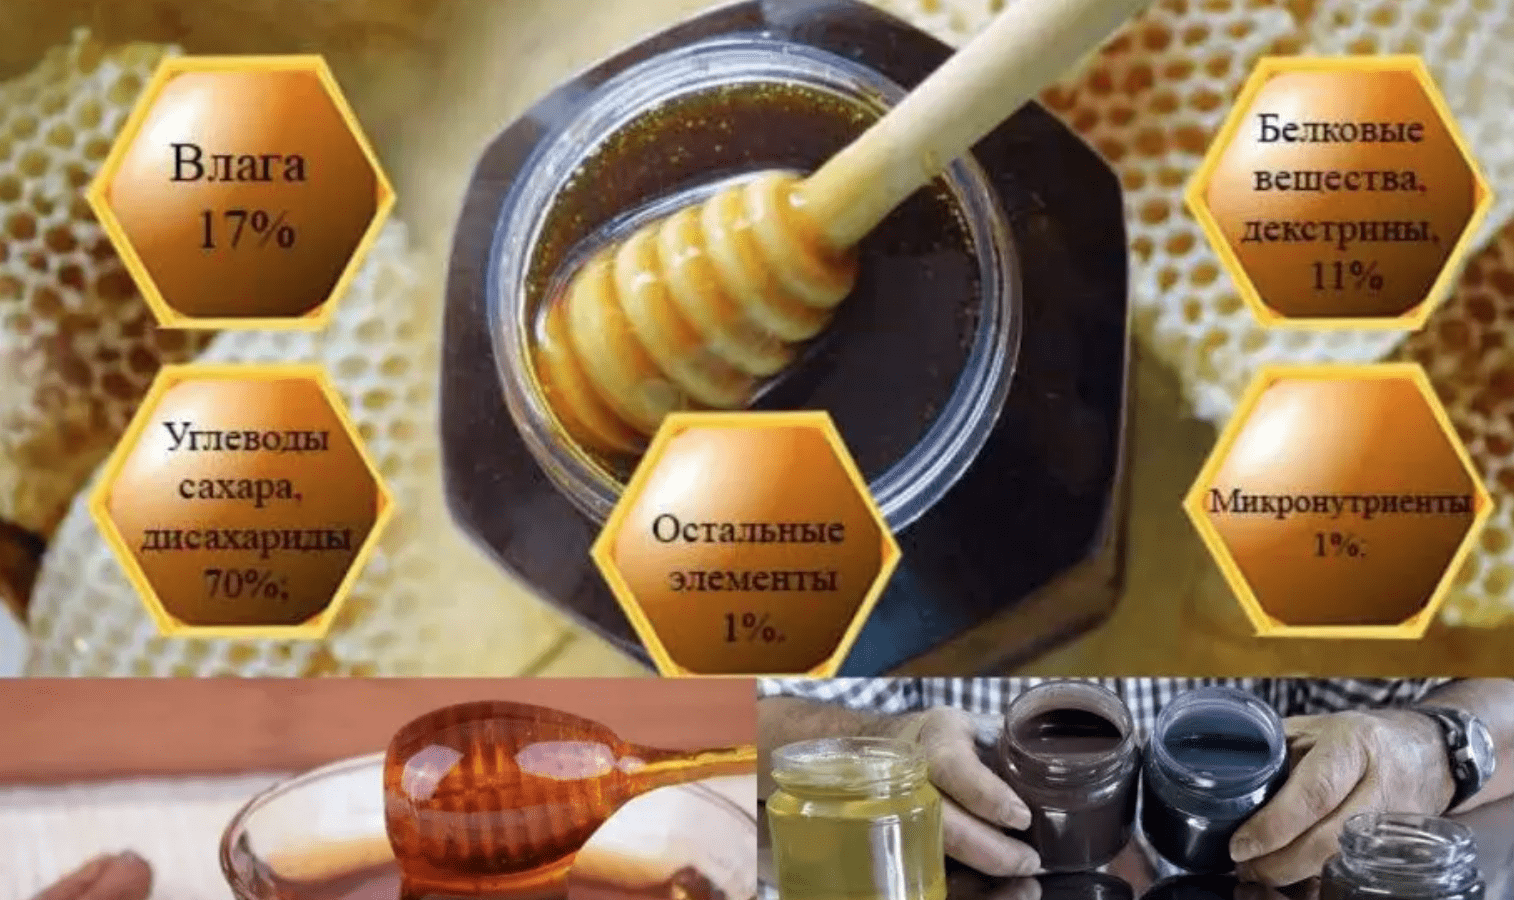 Složení a obsah kalorií medovicového medu